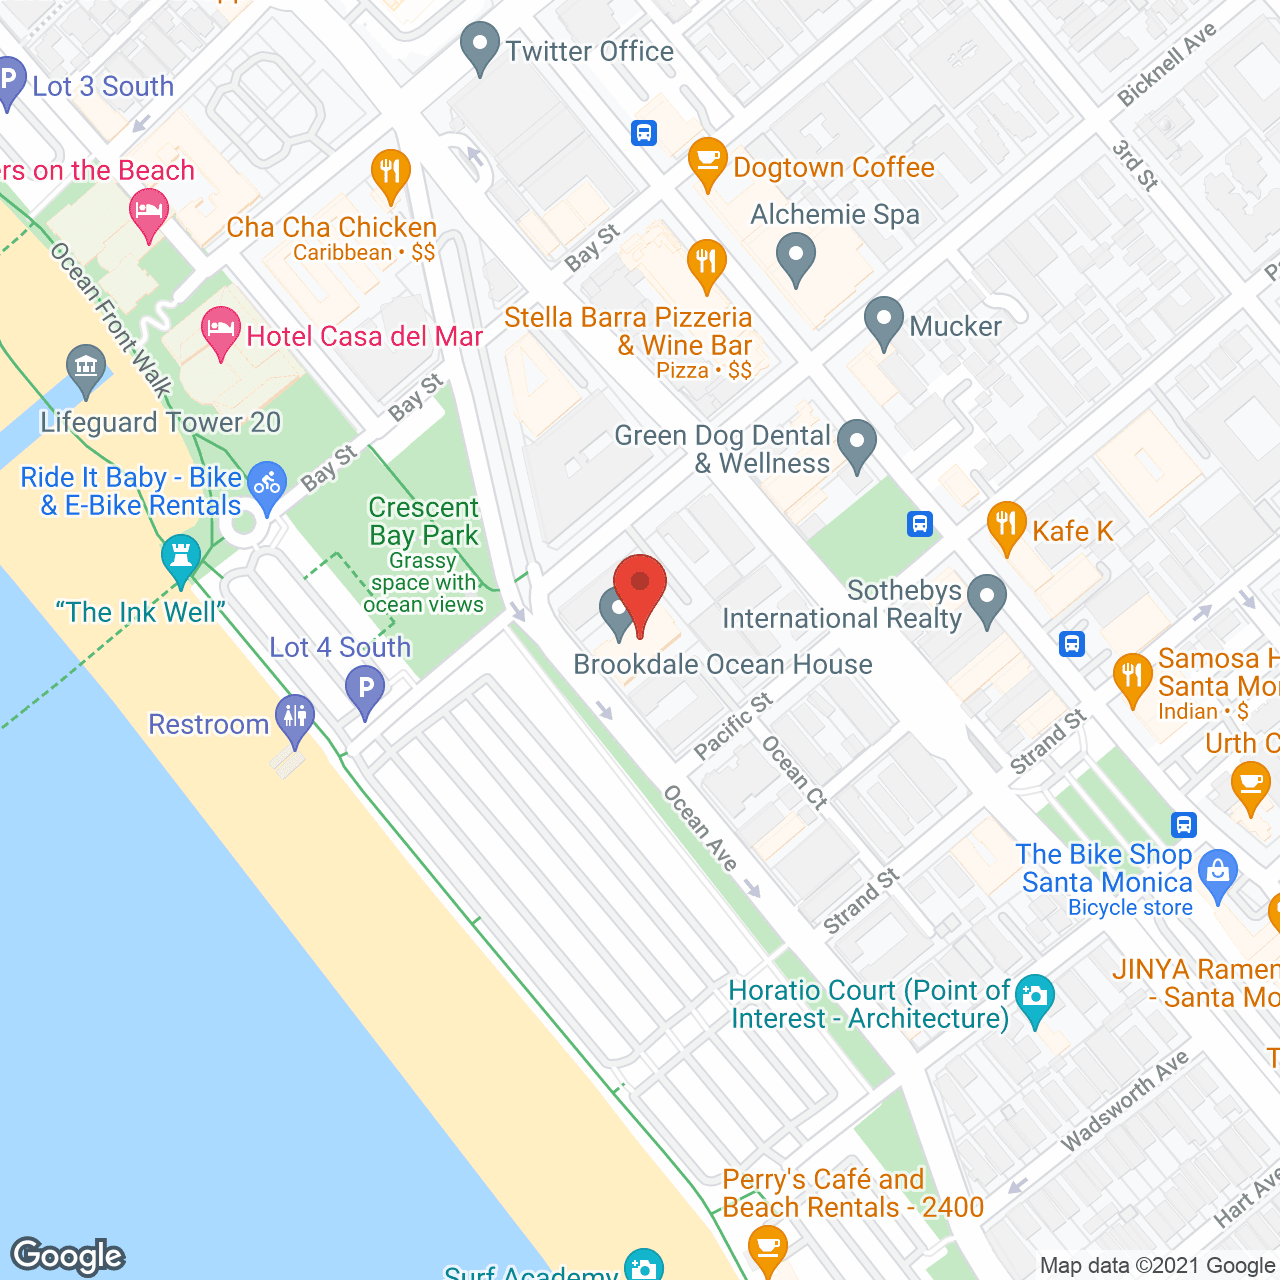 Brookdale Ocean House in google map